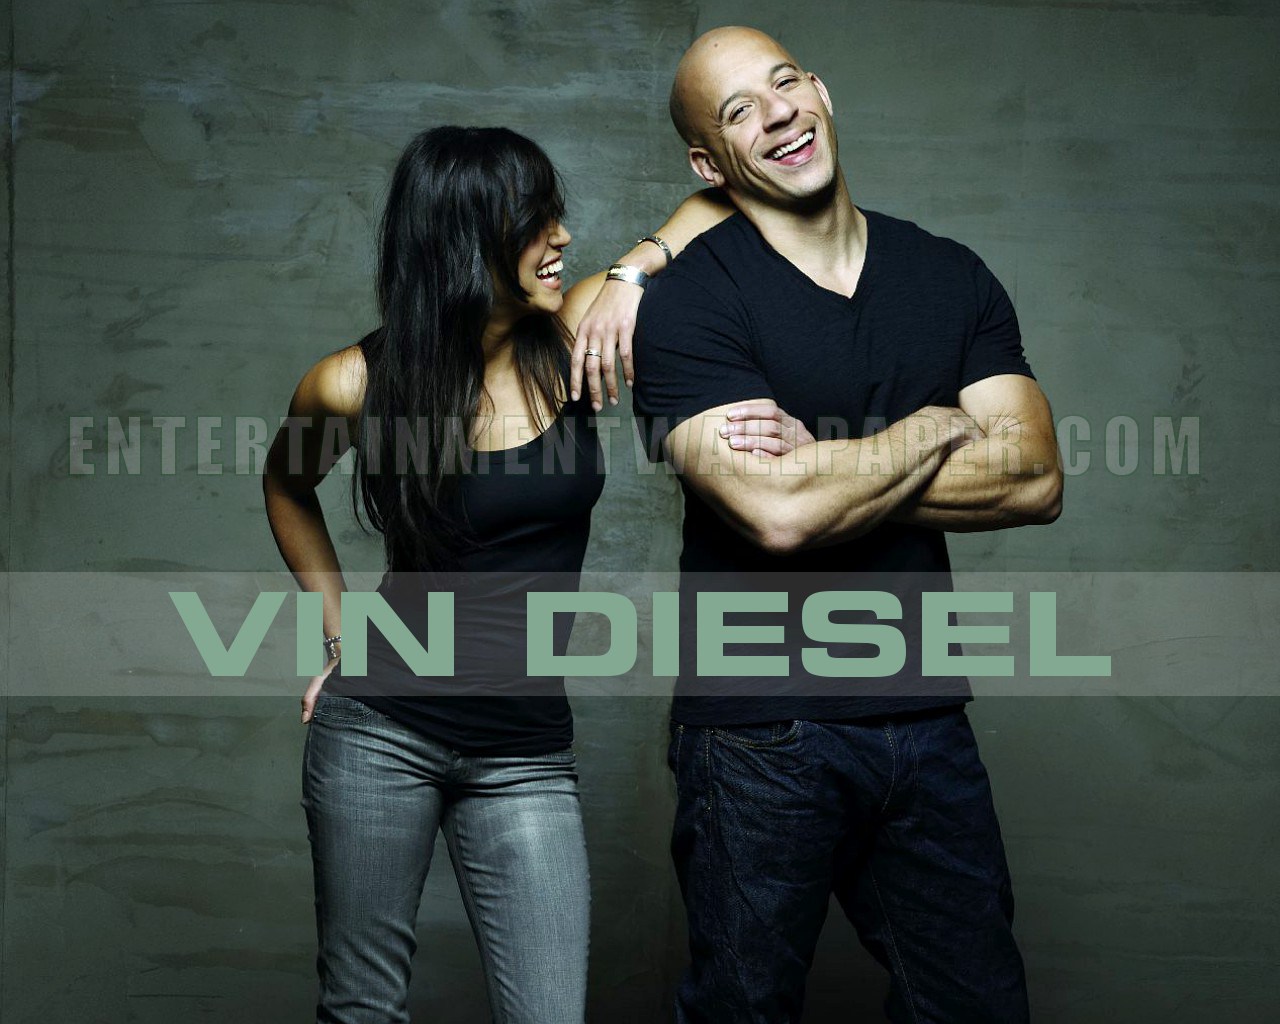 Vin Diesel Wallpapers 1280x1024, - Vin Diesel New Image Hd - HD Wallpaper 